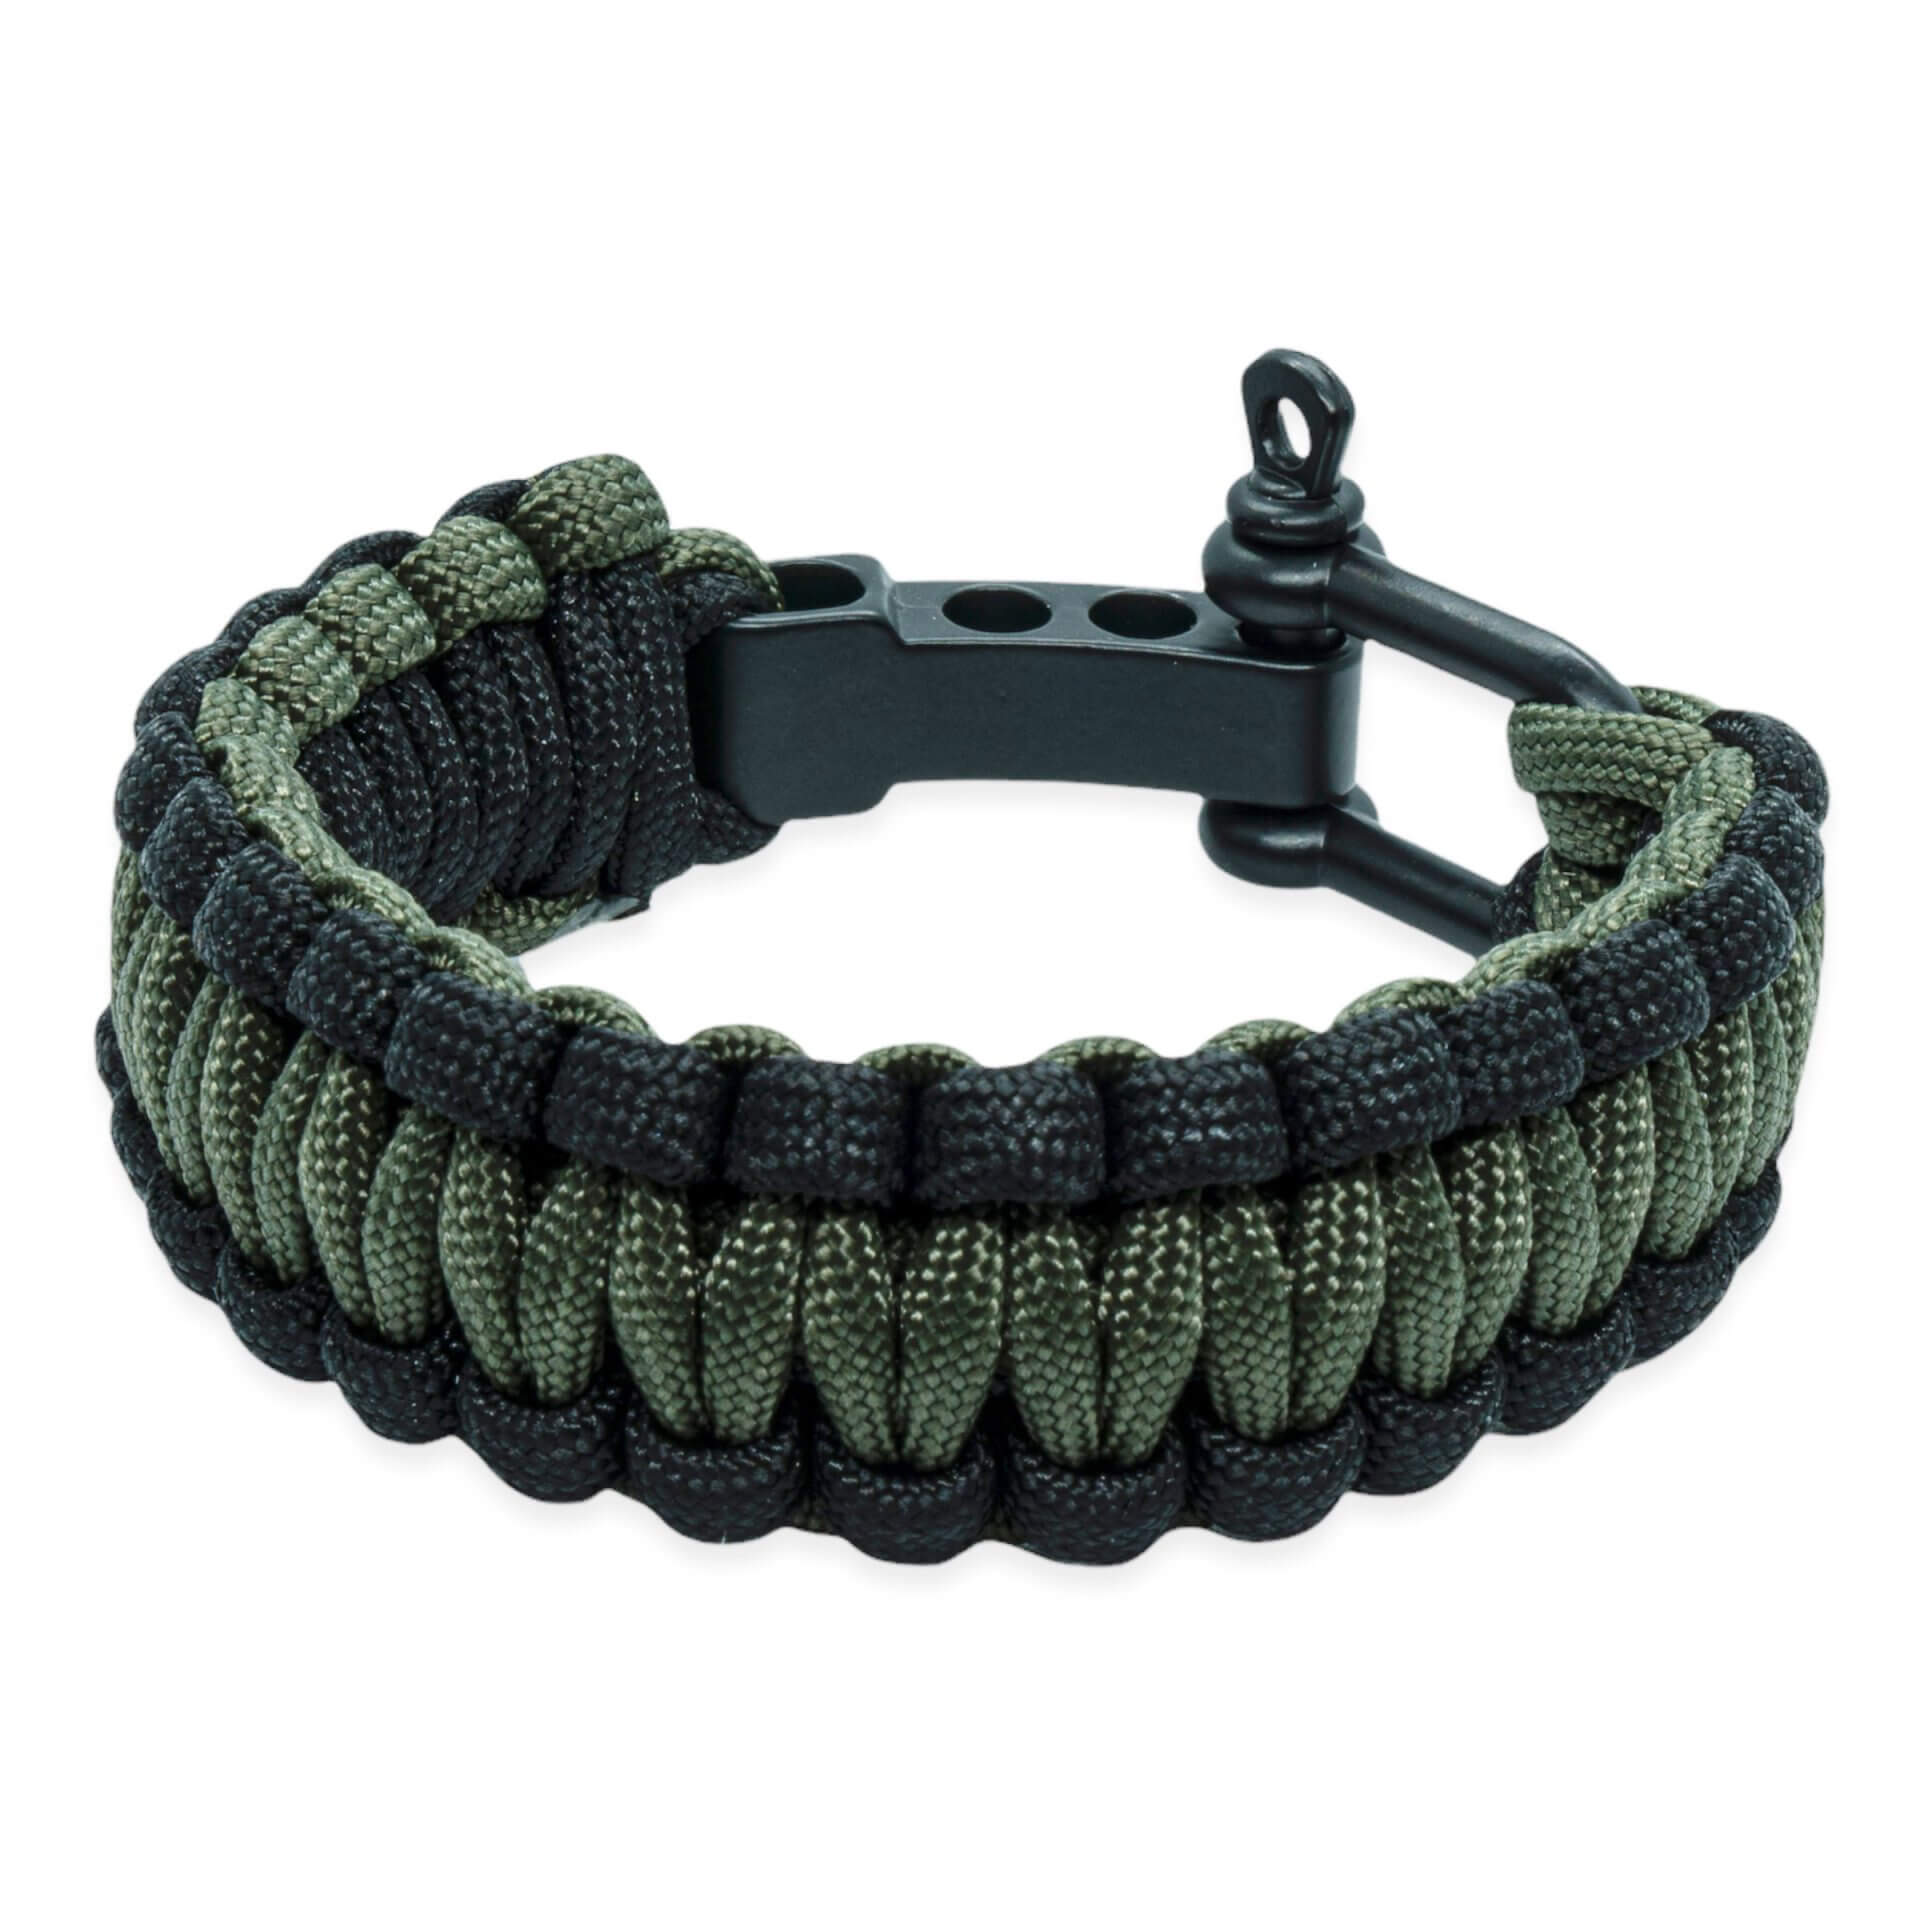 Survival bracelet - Green black (adjustable)